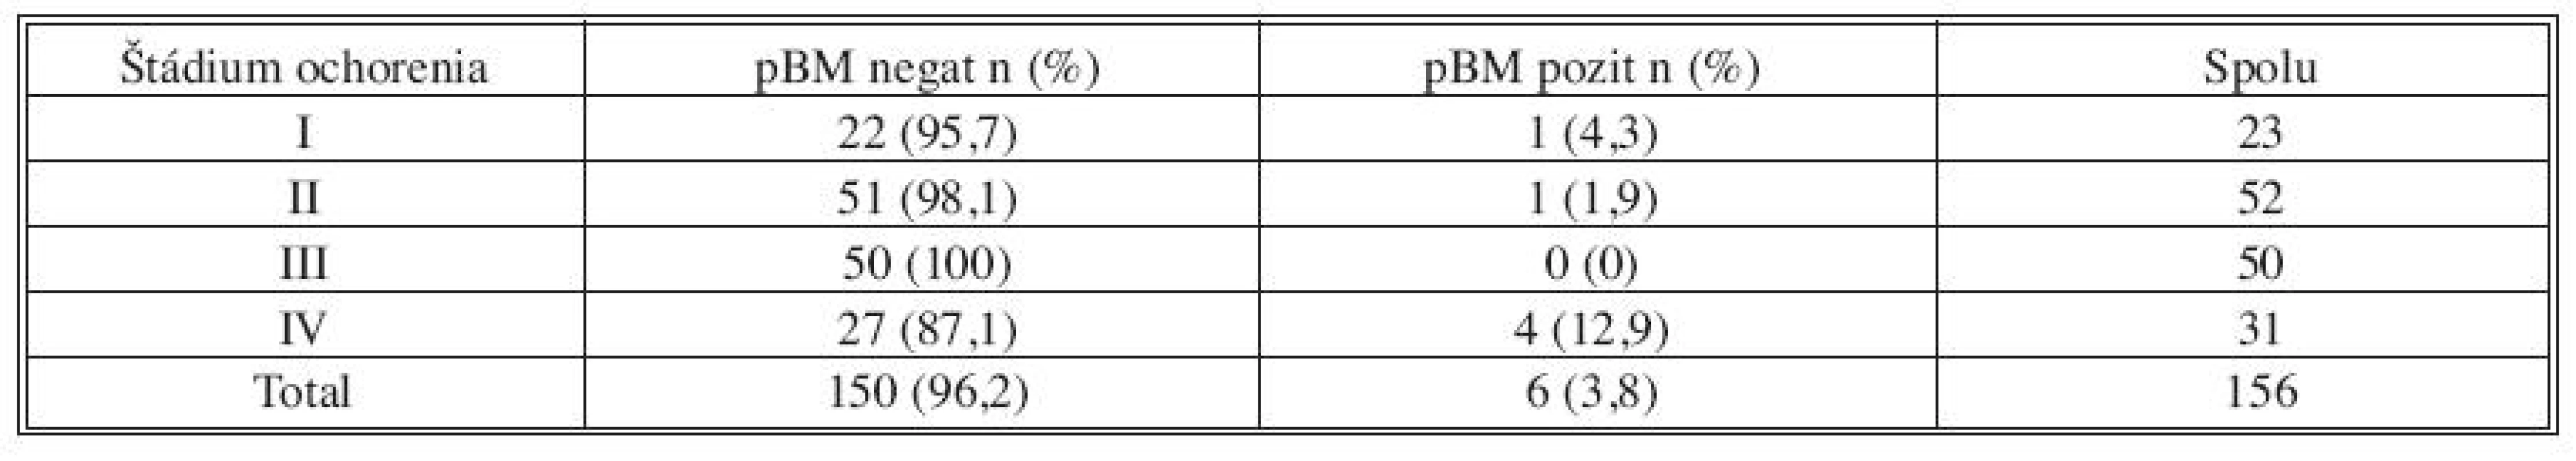 Výsledky vyšetrenia MRD vo vzorke kostnej drene odobranej v úvode operácie (pBM) v jednotlivých skupinách podľa štádia ochorenia TNM klasifikácie
Tab. 2. Results of MRD examinations in bone marrow samples collected at the beginning of the procedures (pBM) in individual groups, specified based on the TNM classification disease stage